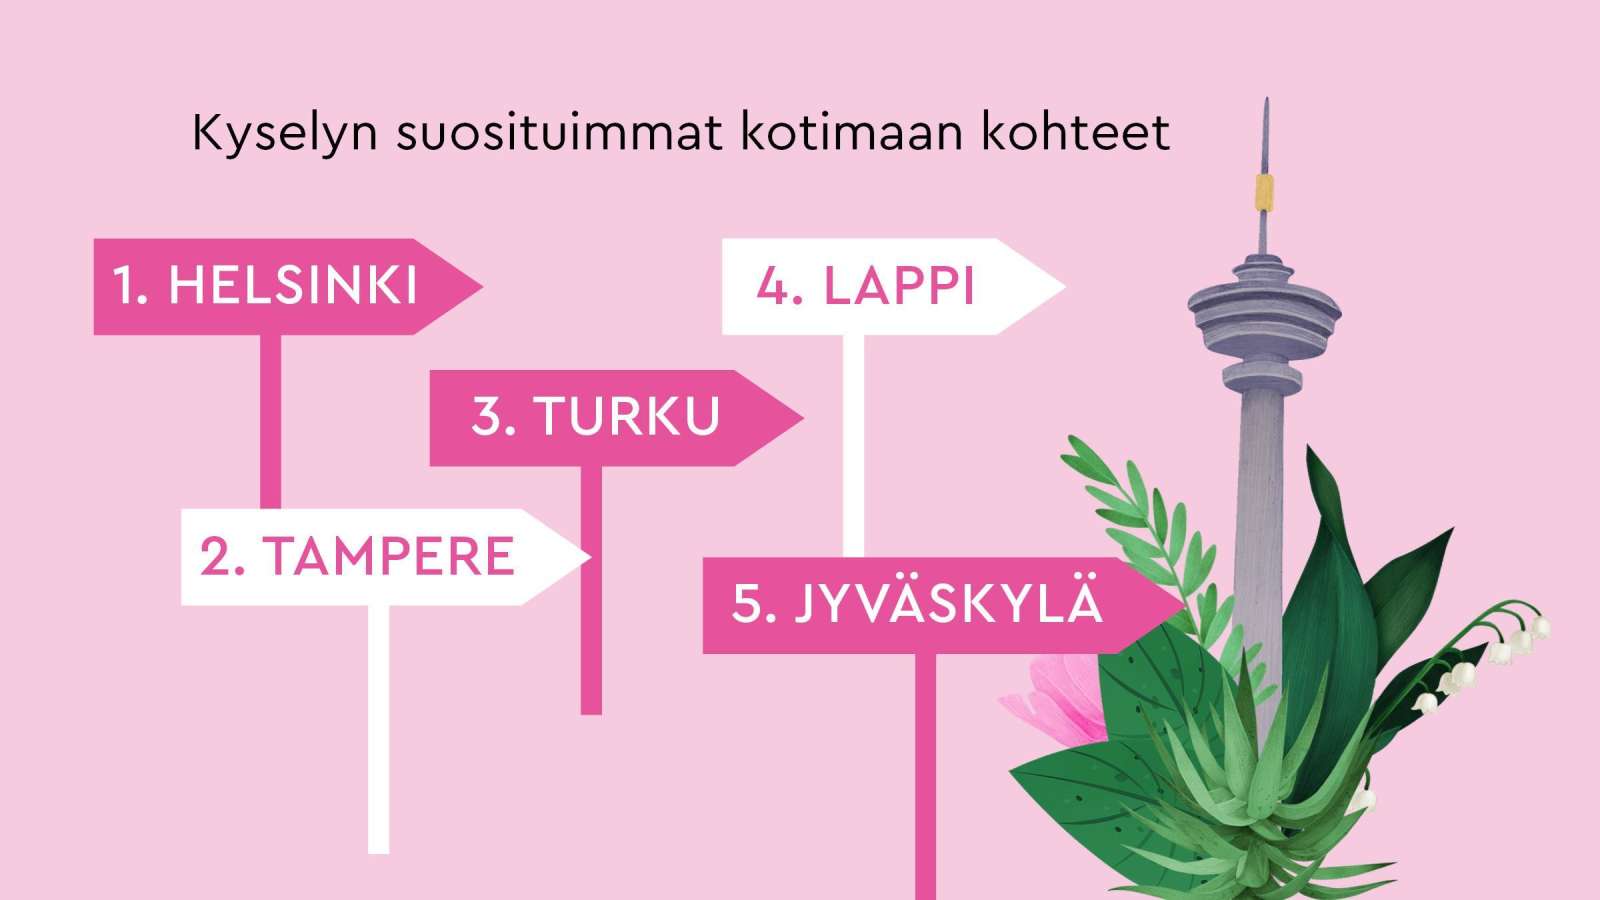 Helsinki ja Tampere ovat suosituimmat lomakohteet